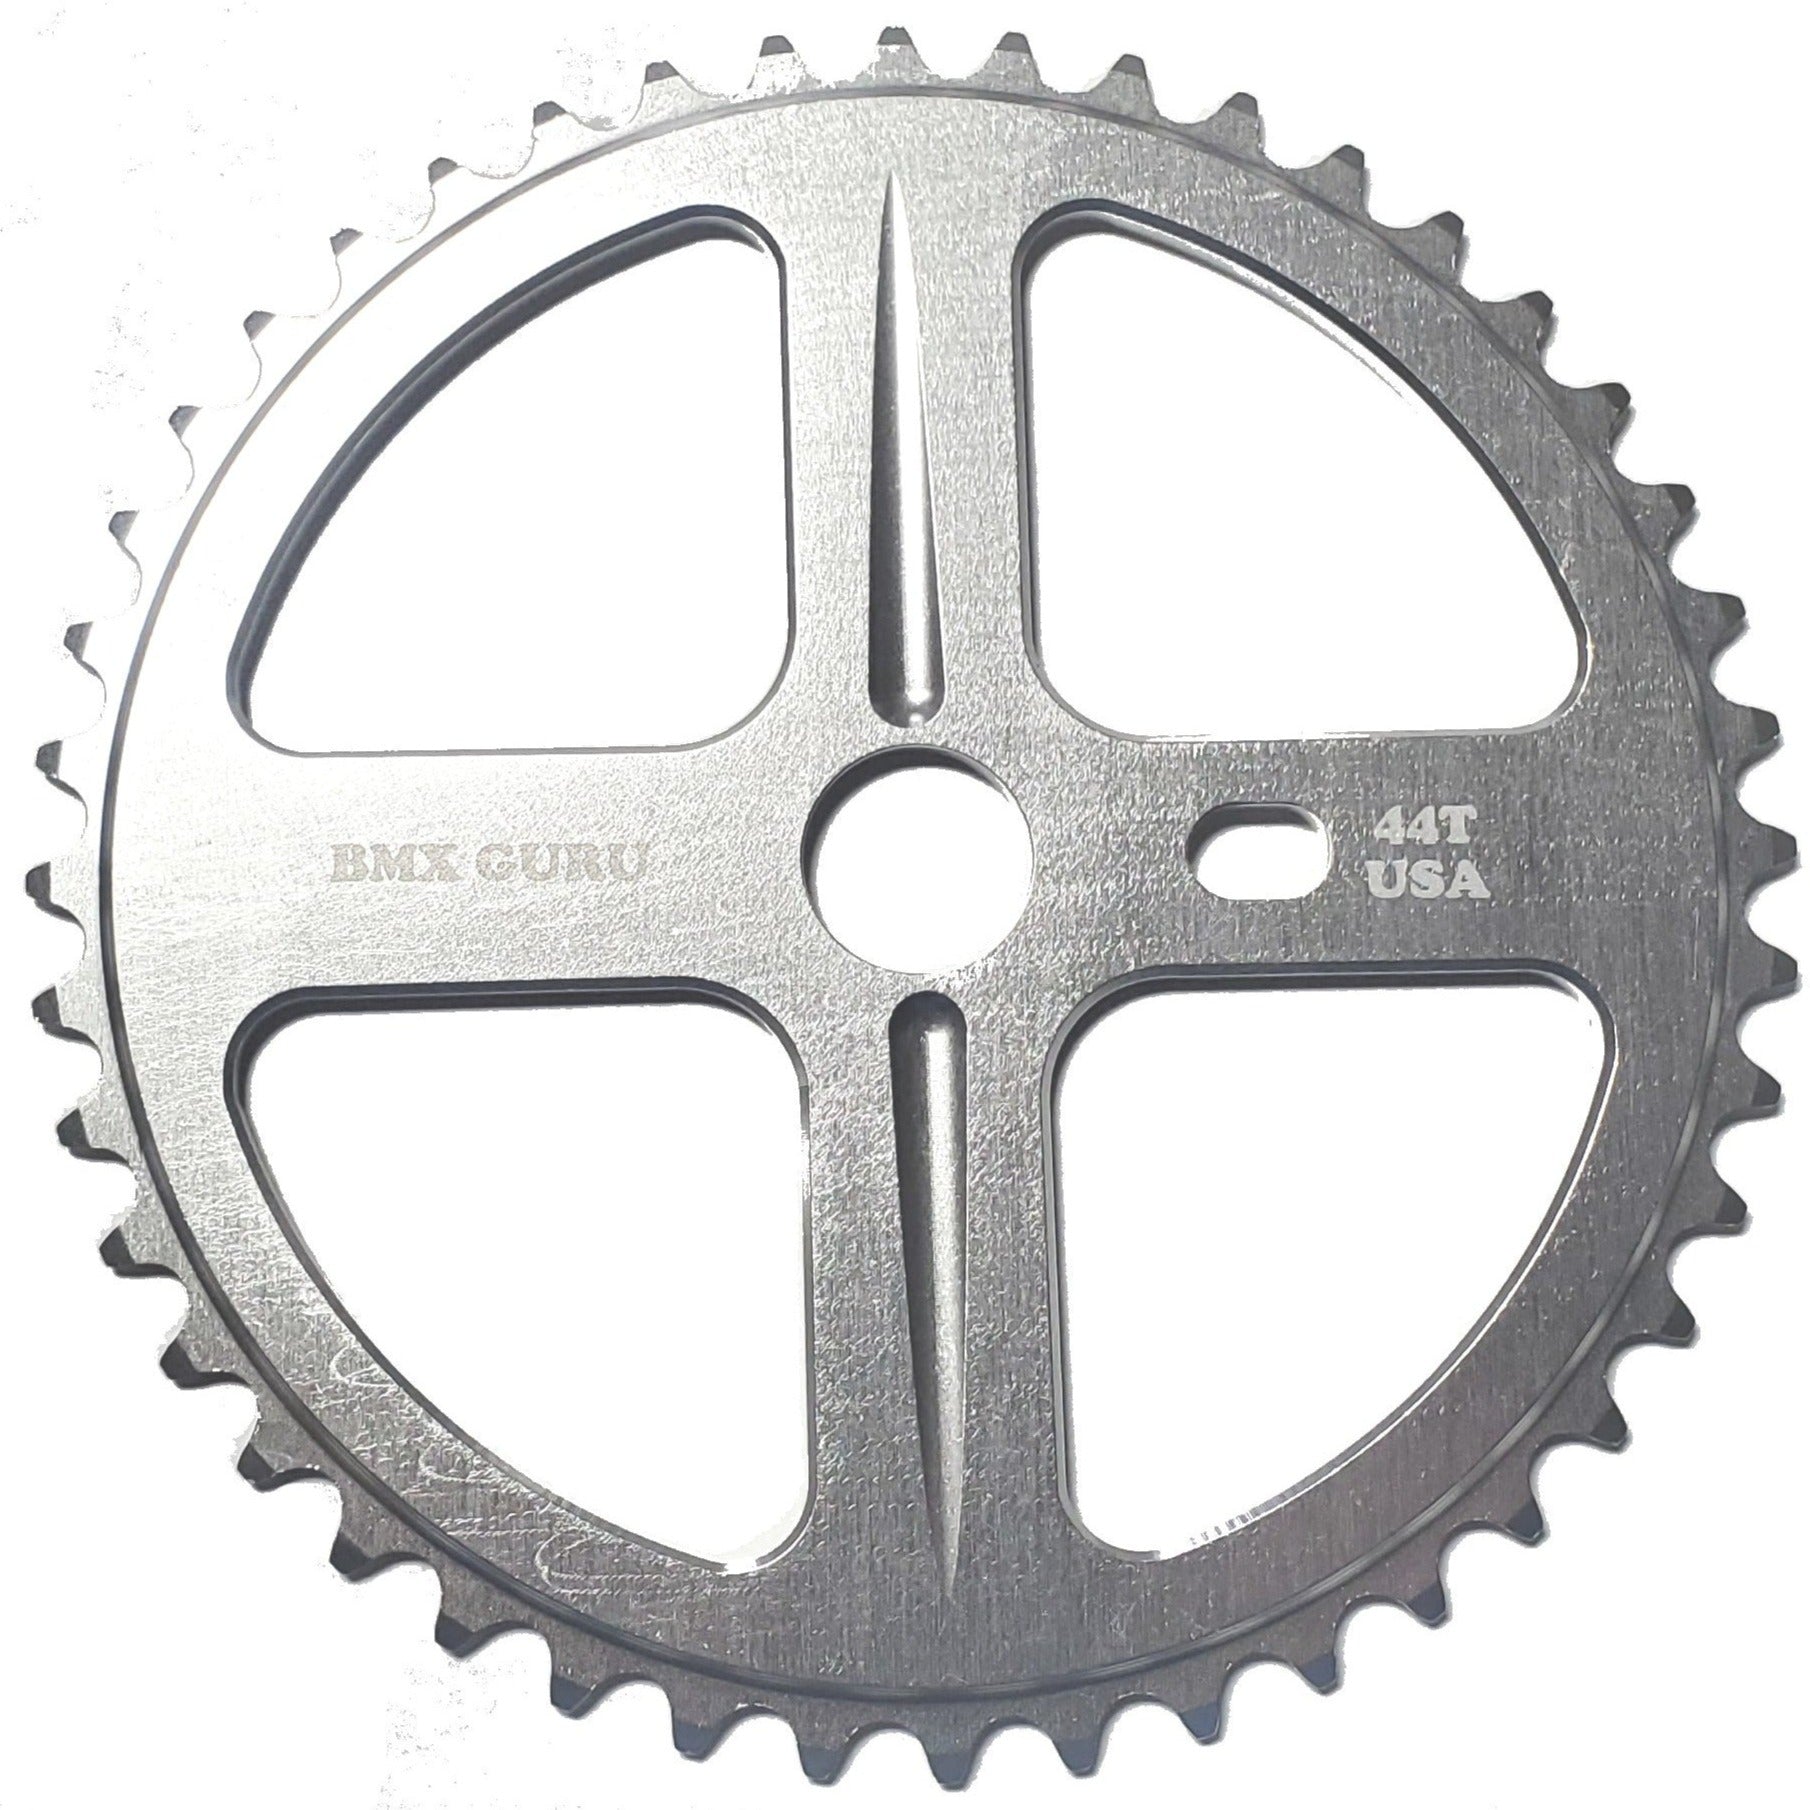 BMXGuru 44t Bolt Drive BMX Aluminum Sprocket / Chainwheel - Silver - USA Made